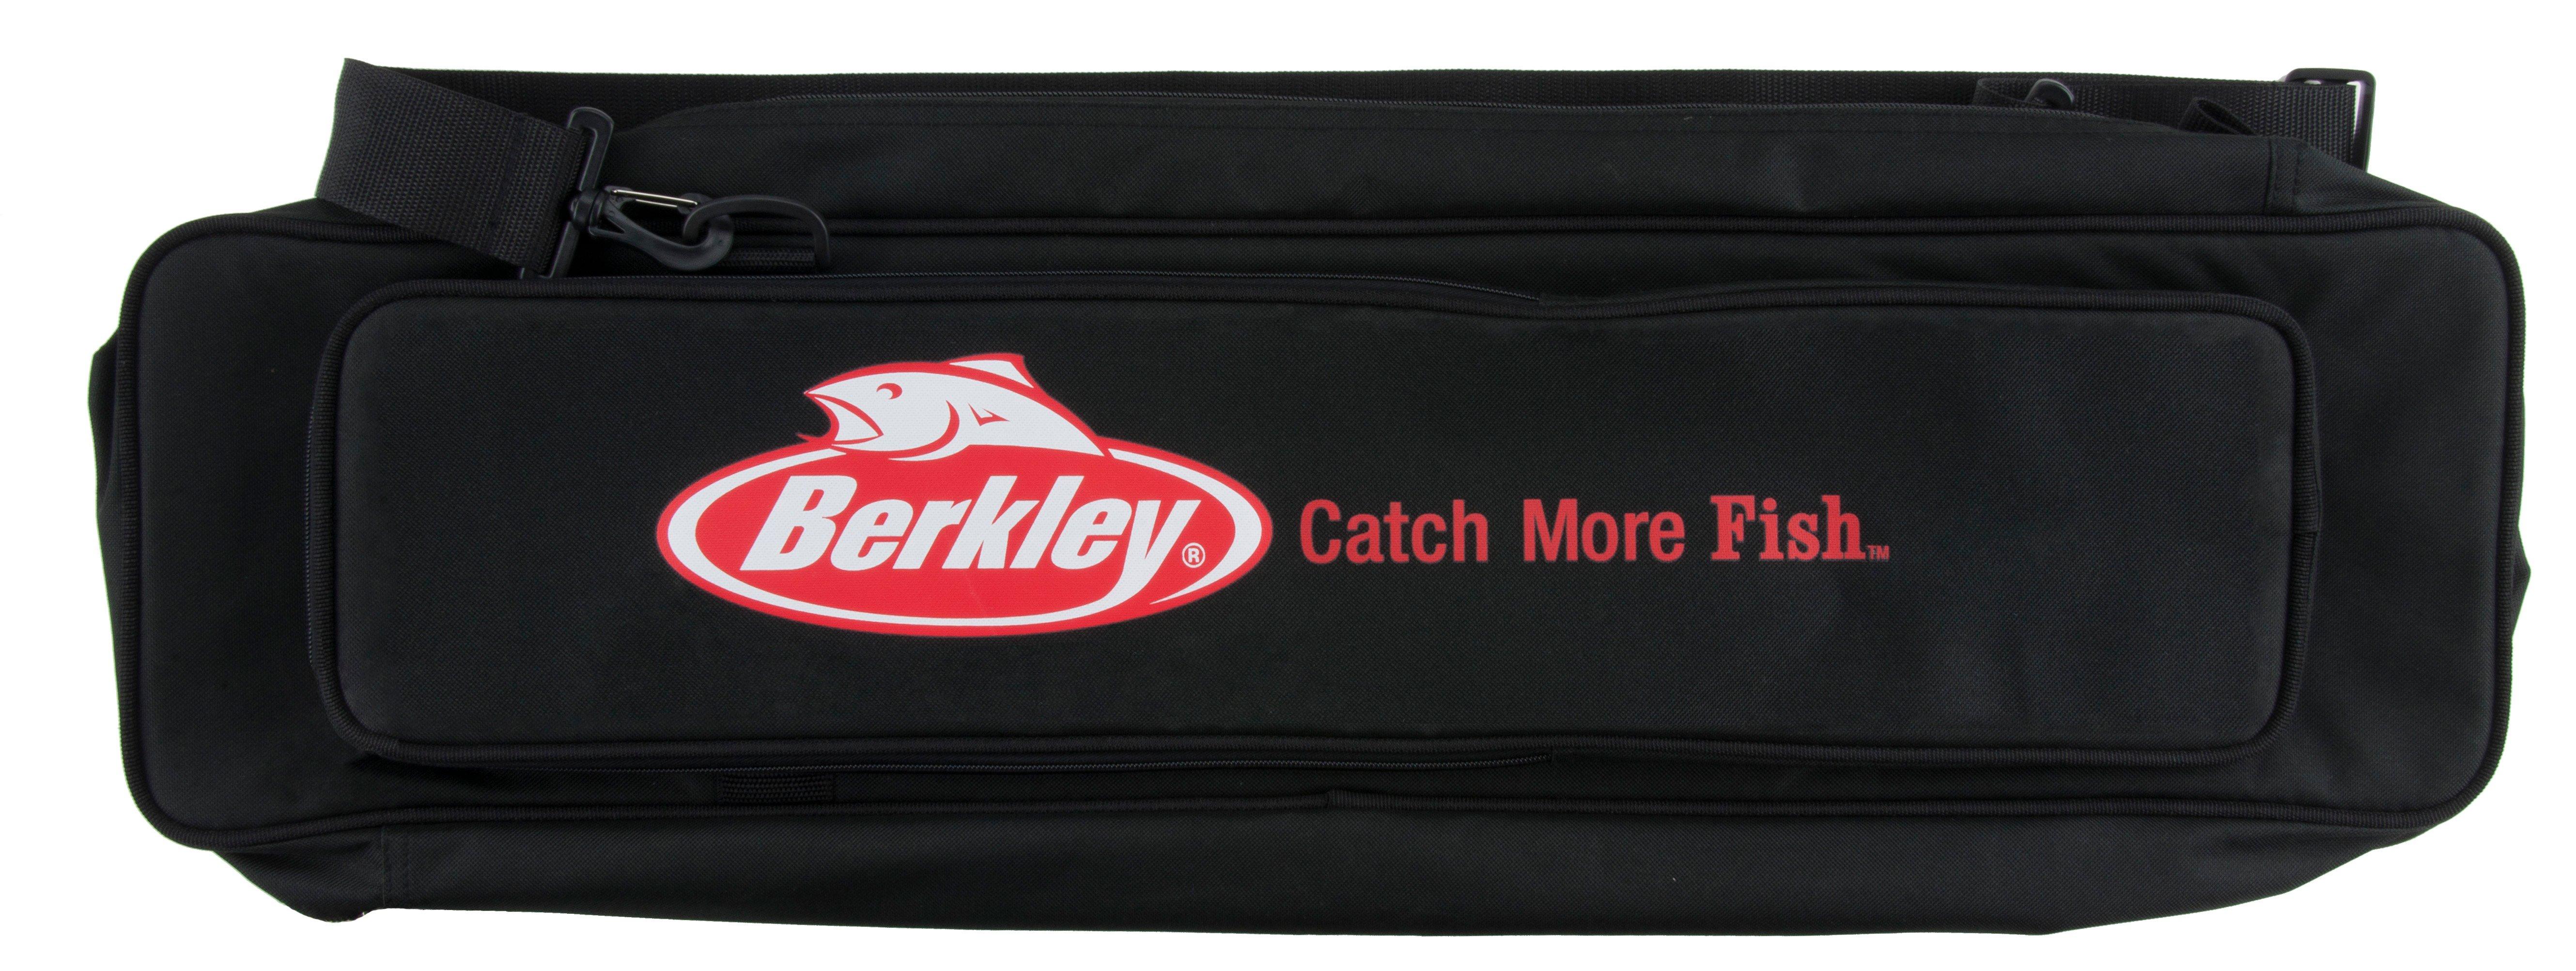 Berkley Ice Rod Bag